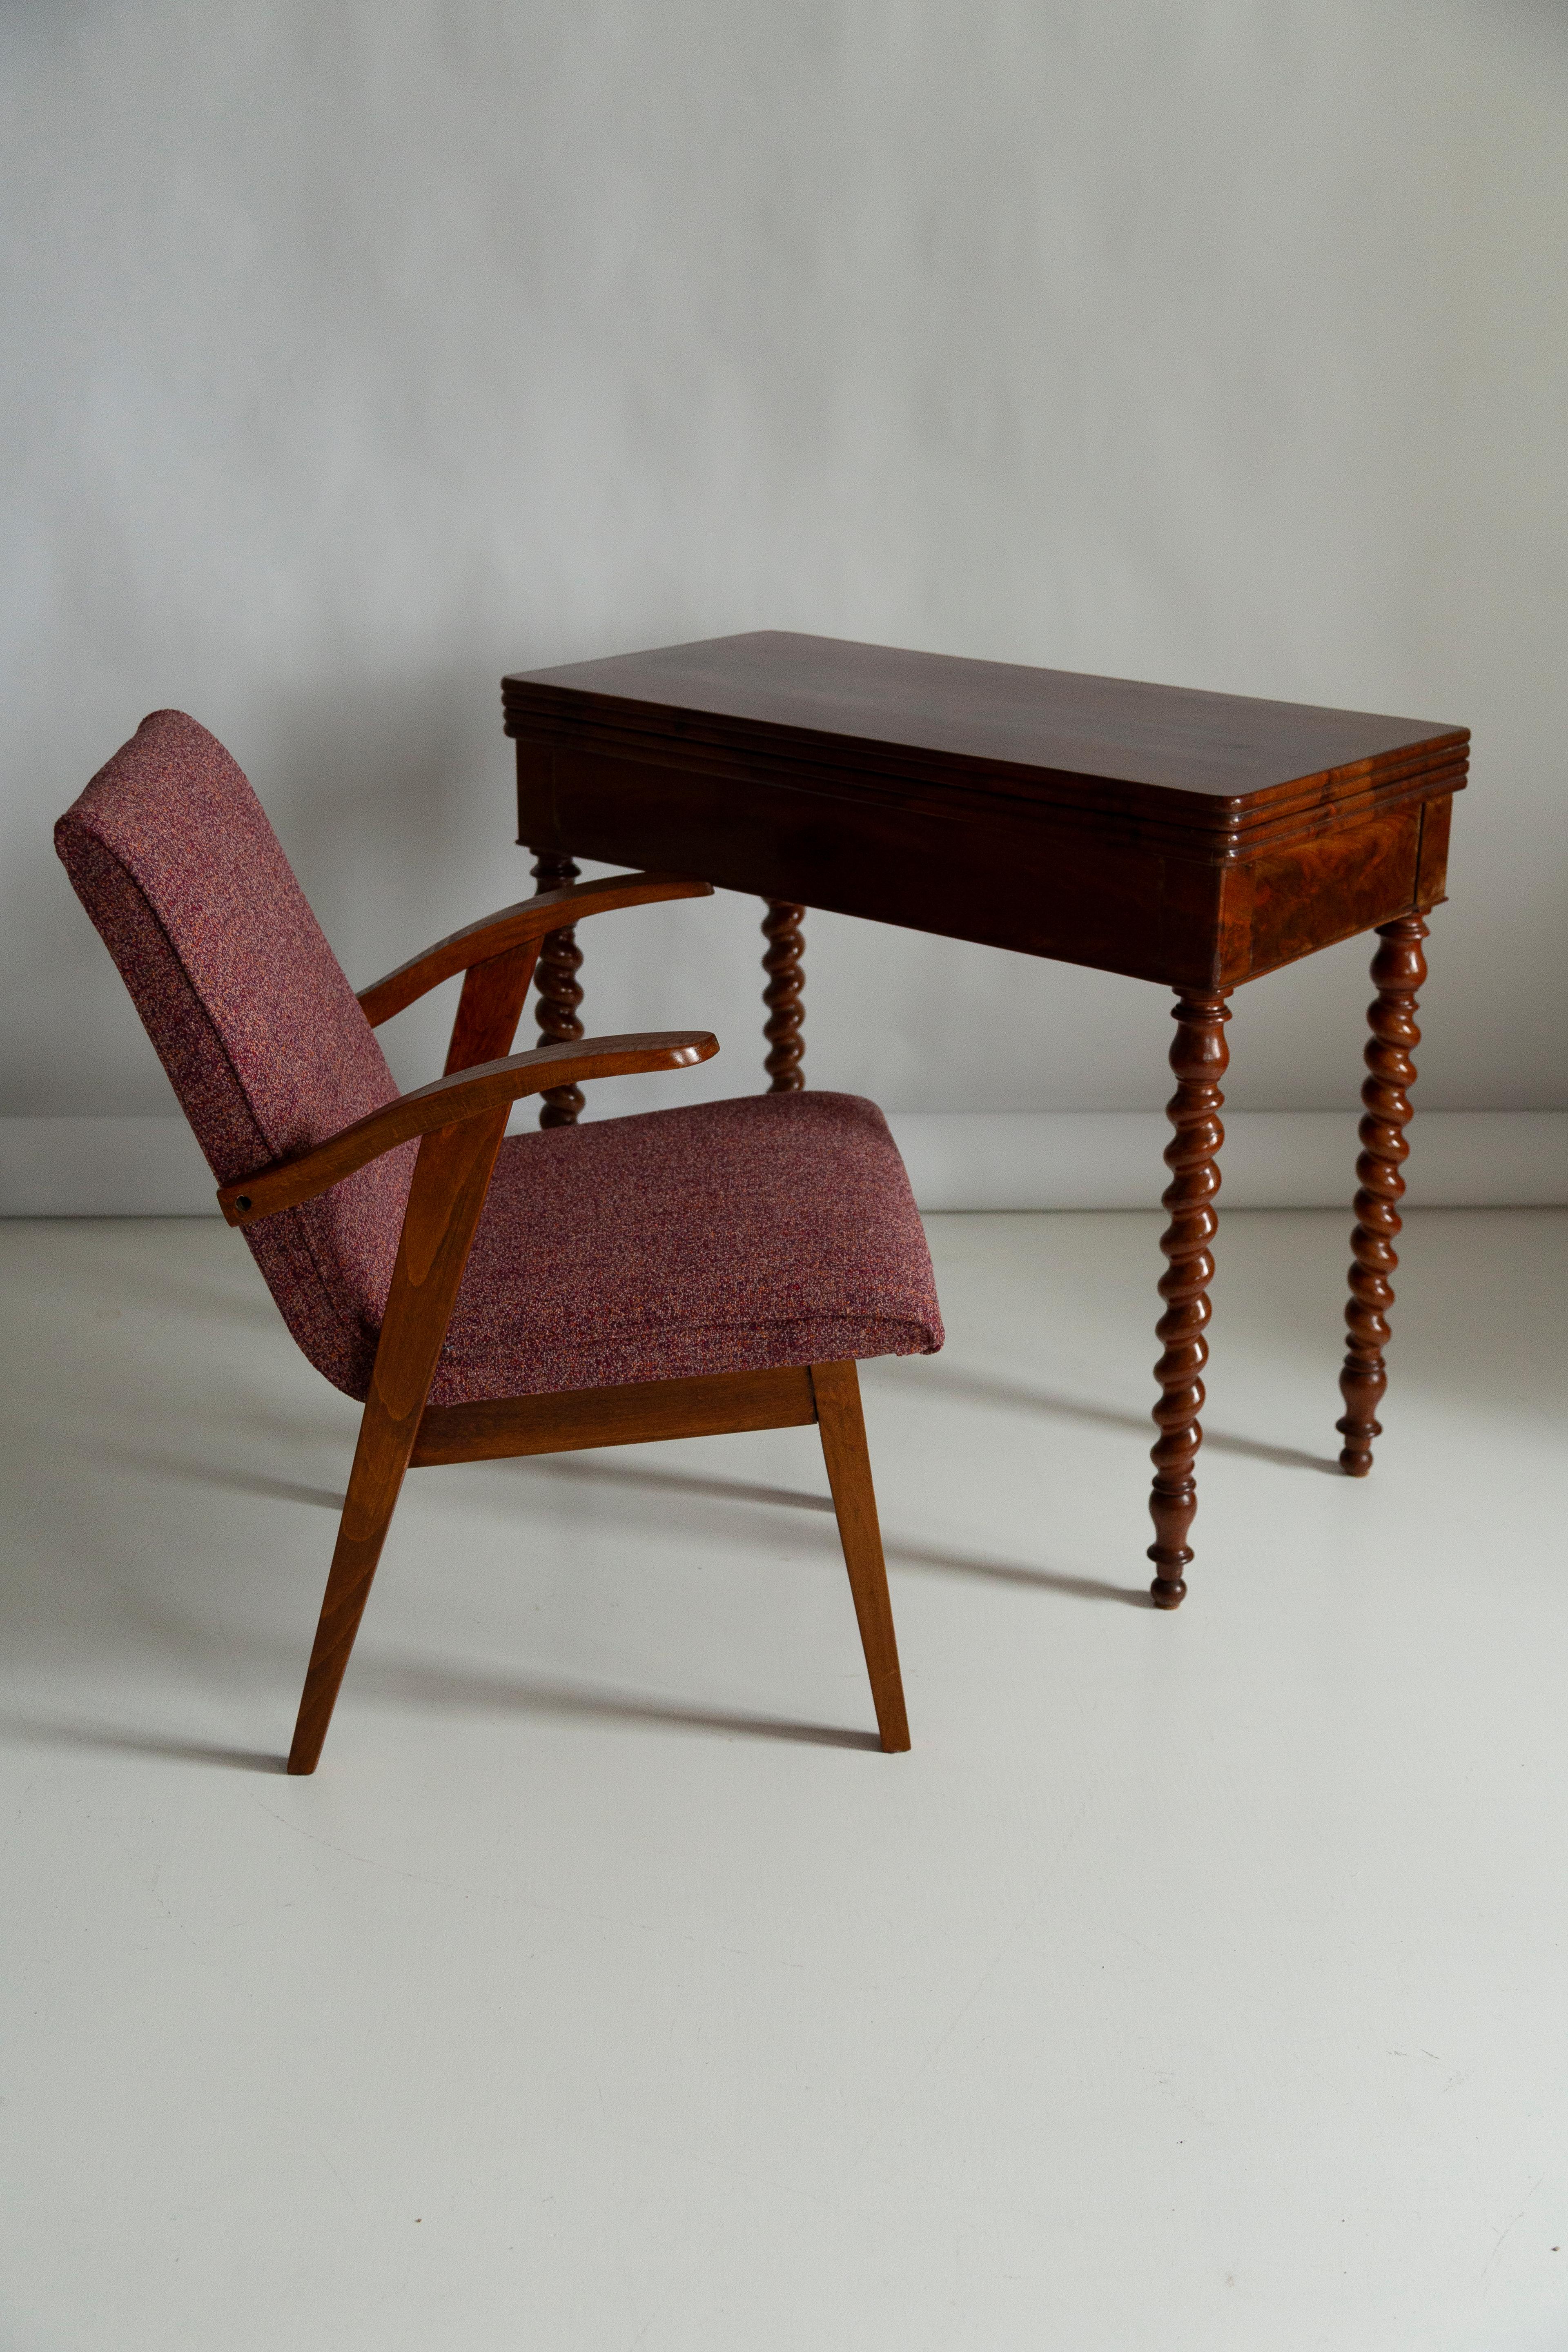 Sessel entworfen von Mieczyslaw Puchala. Dunkelbraunes Holz in Kombination mit einem violett melierten schönen Stoff verleiht ihm Eleganz und Noblesse. Der Stuhl wurde einer kompletten Tischler- und Polstermöbelrenovierung unterzogen. Das Holz ist